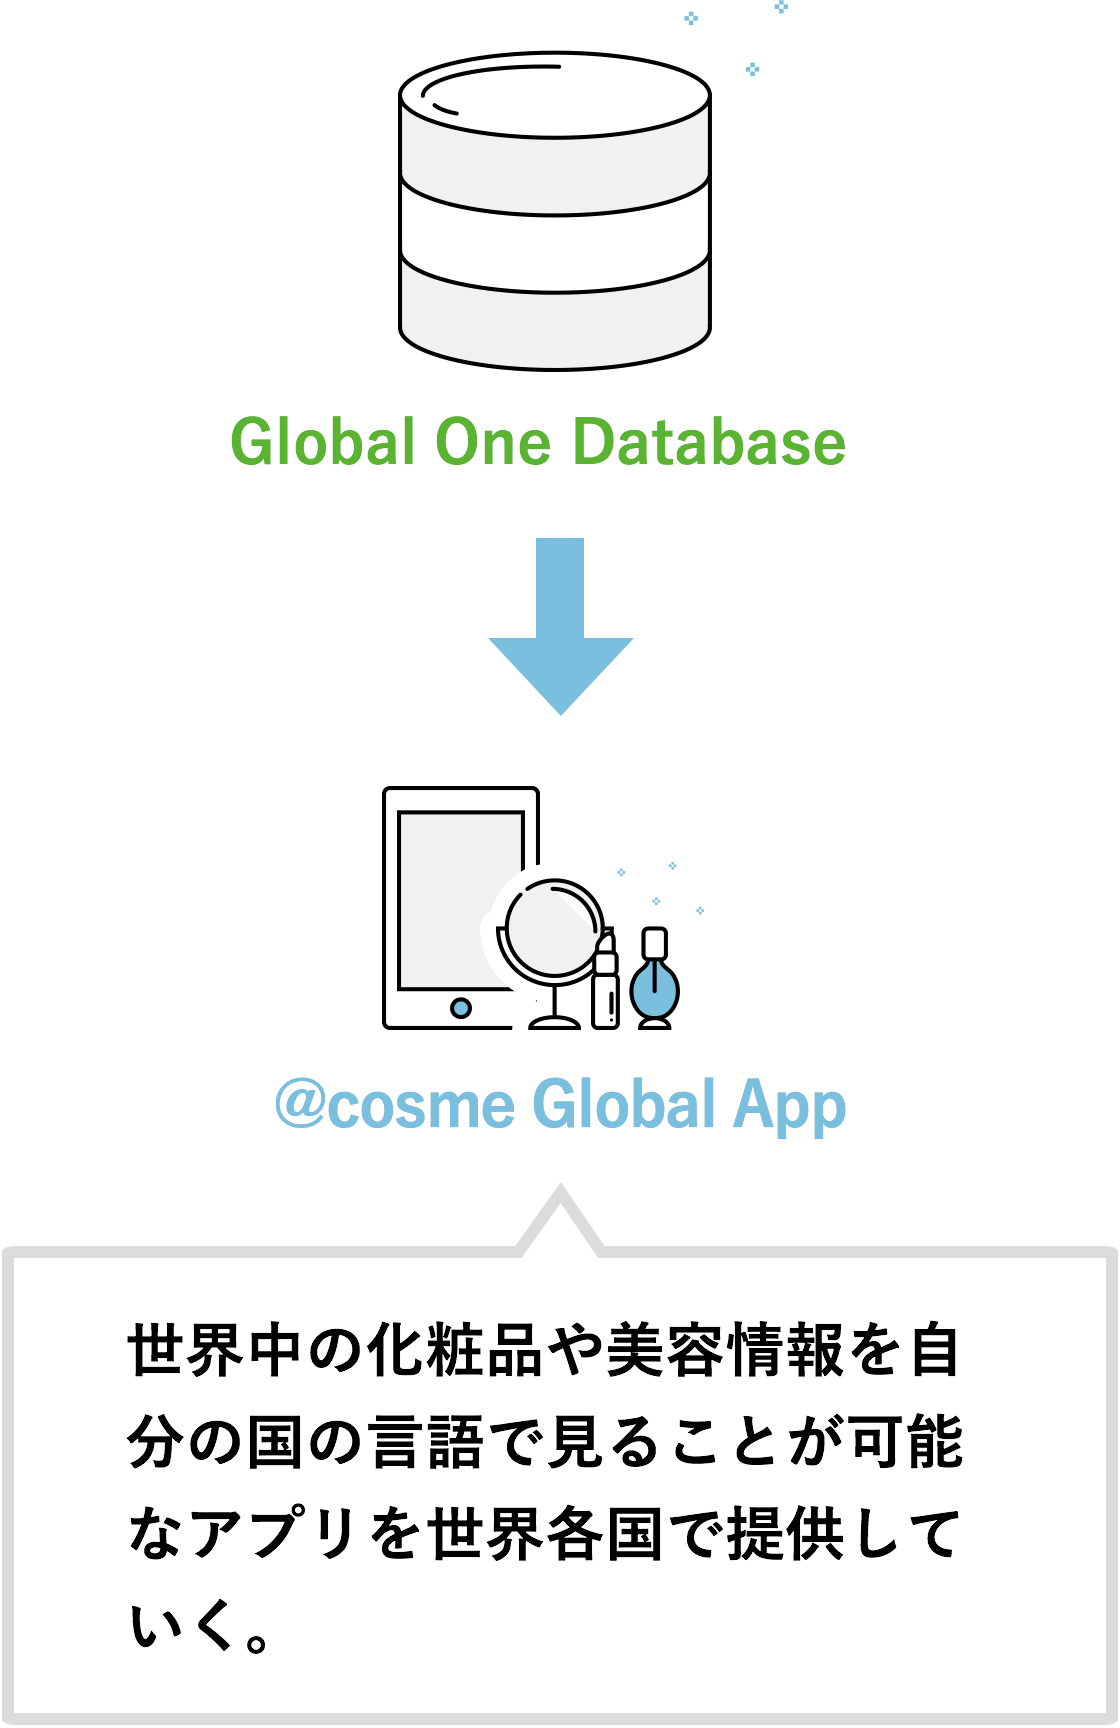 Global One Databaseから@cosme Global App（世界中の化粧品や美容情報を自分の国の言語で見ることが可能なアプリを世界各国で提供していく。）へ